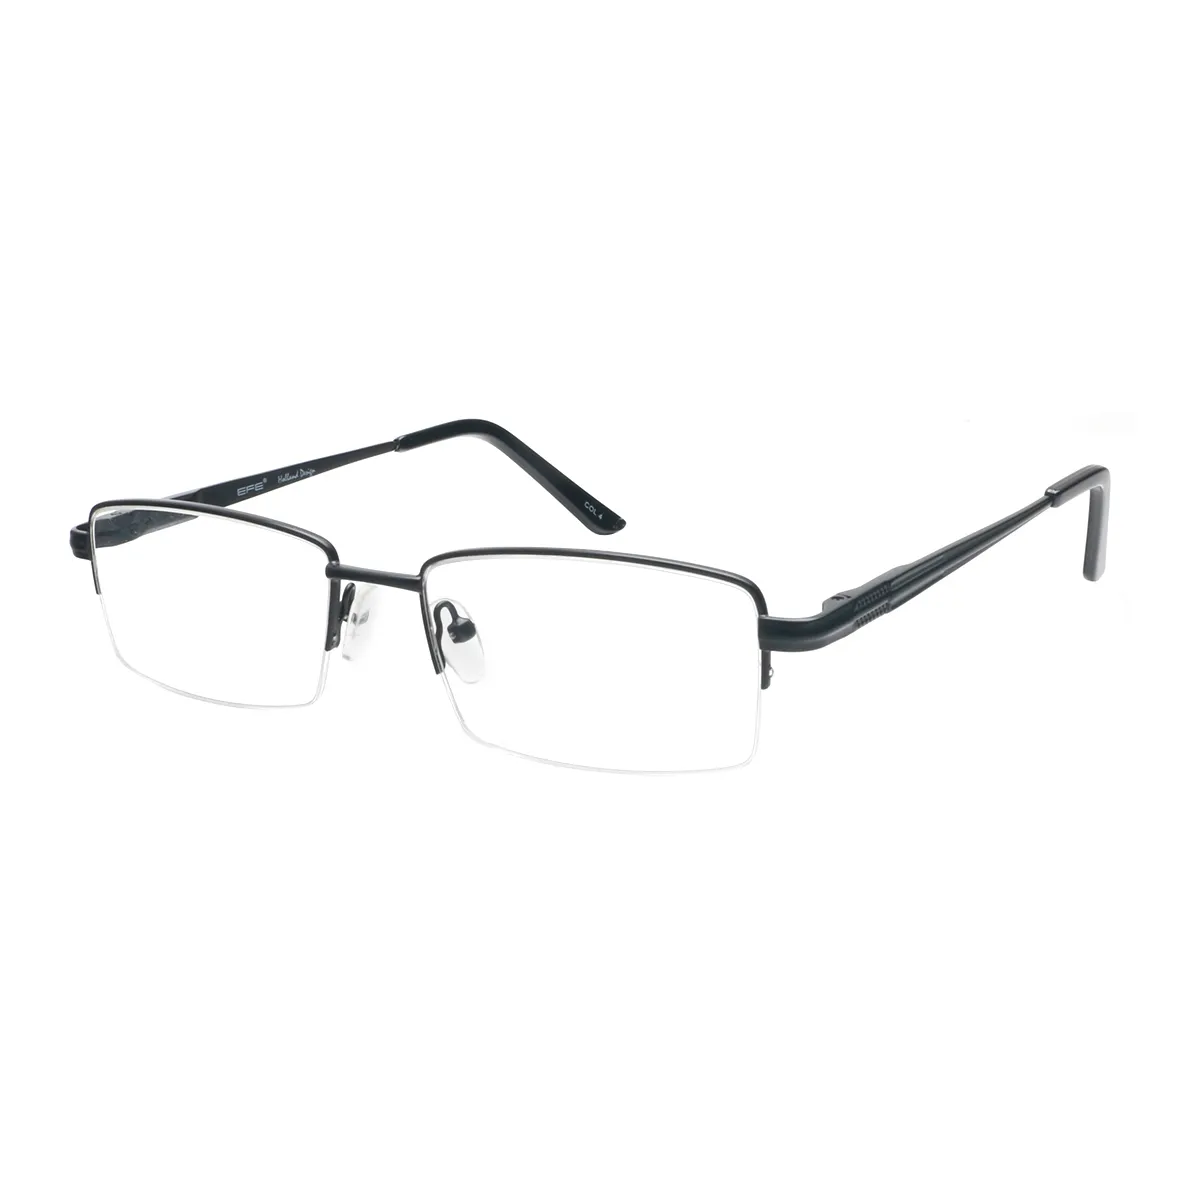 Pollock - Rectangle Black Glasses for Men